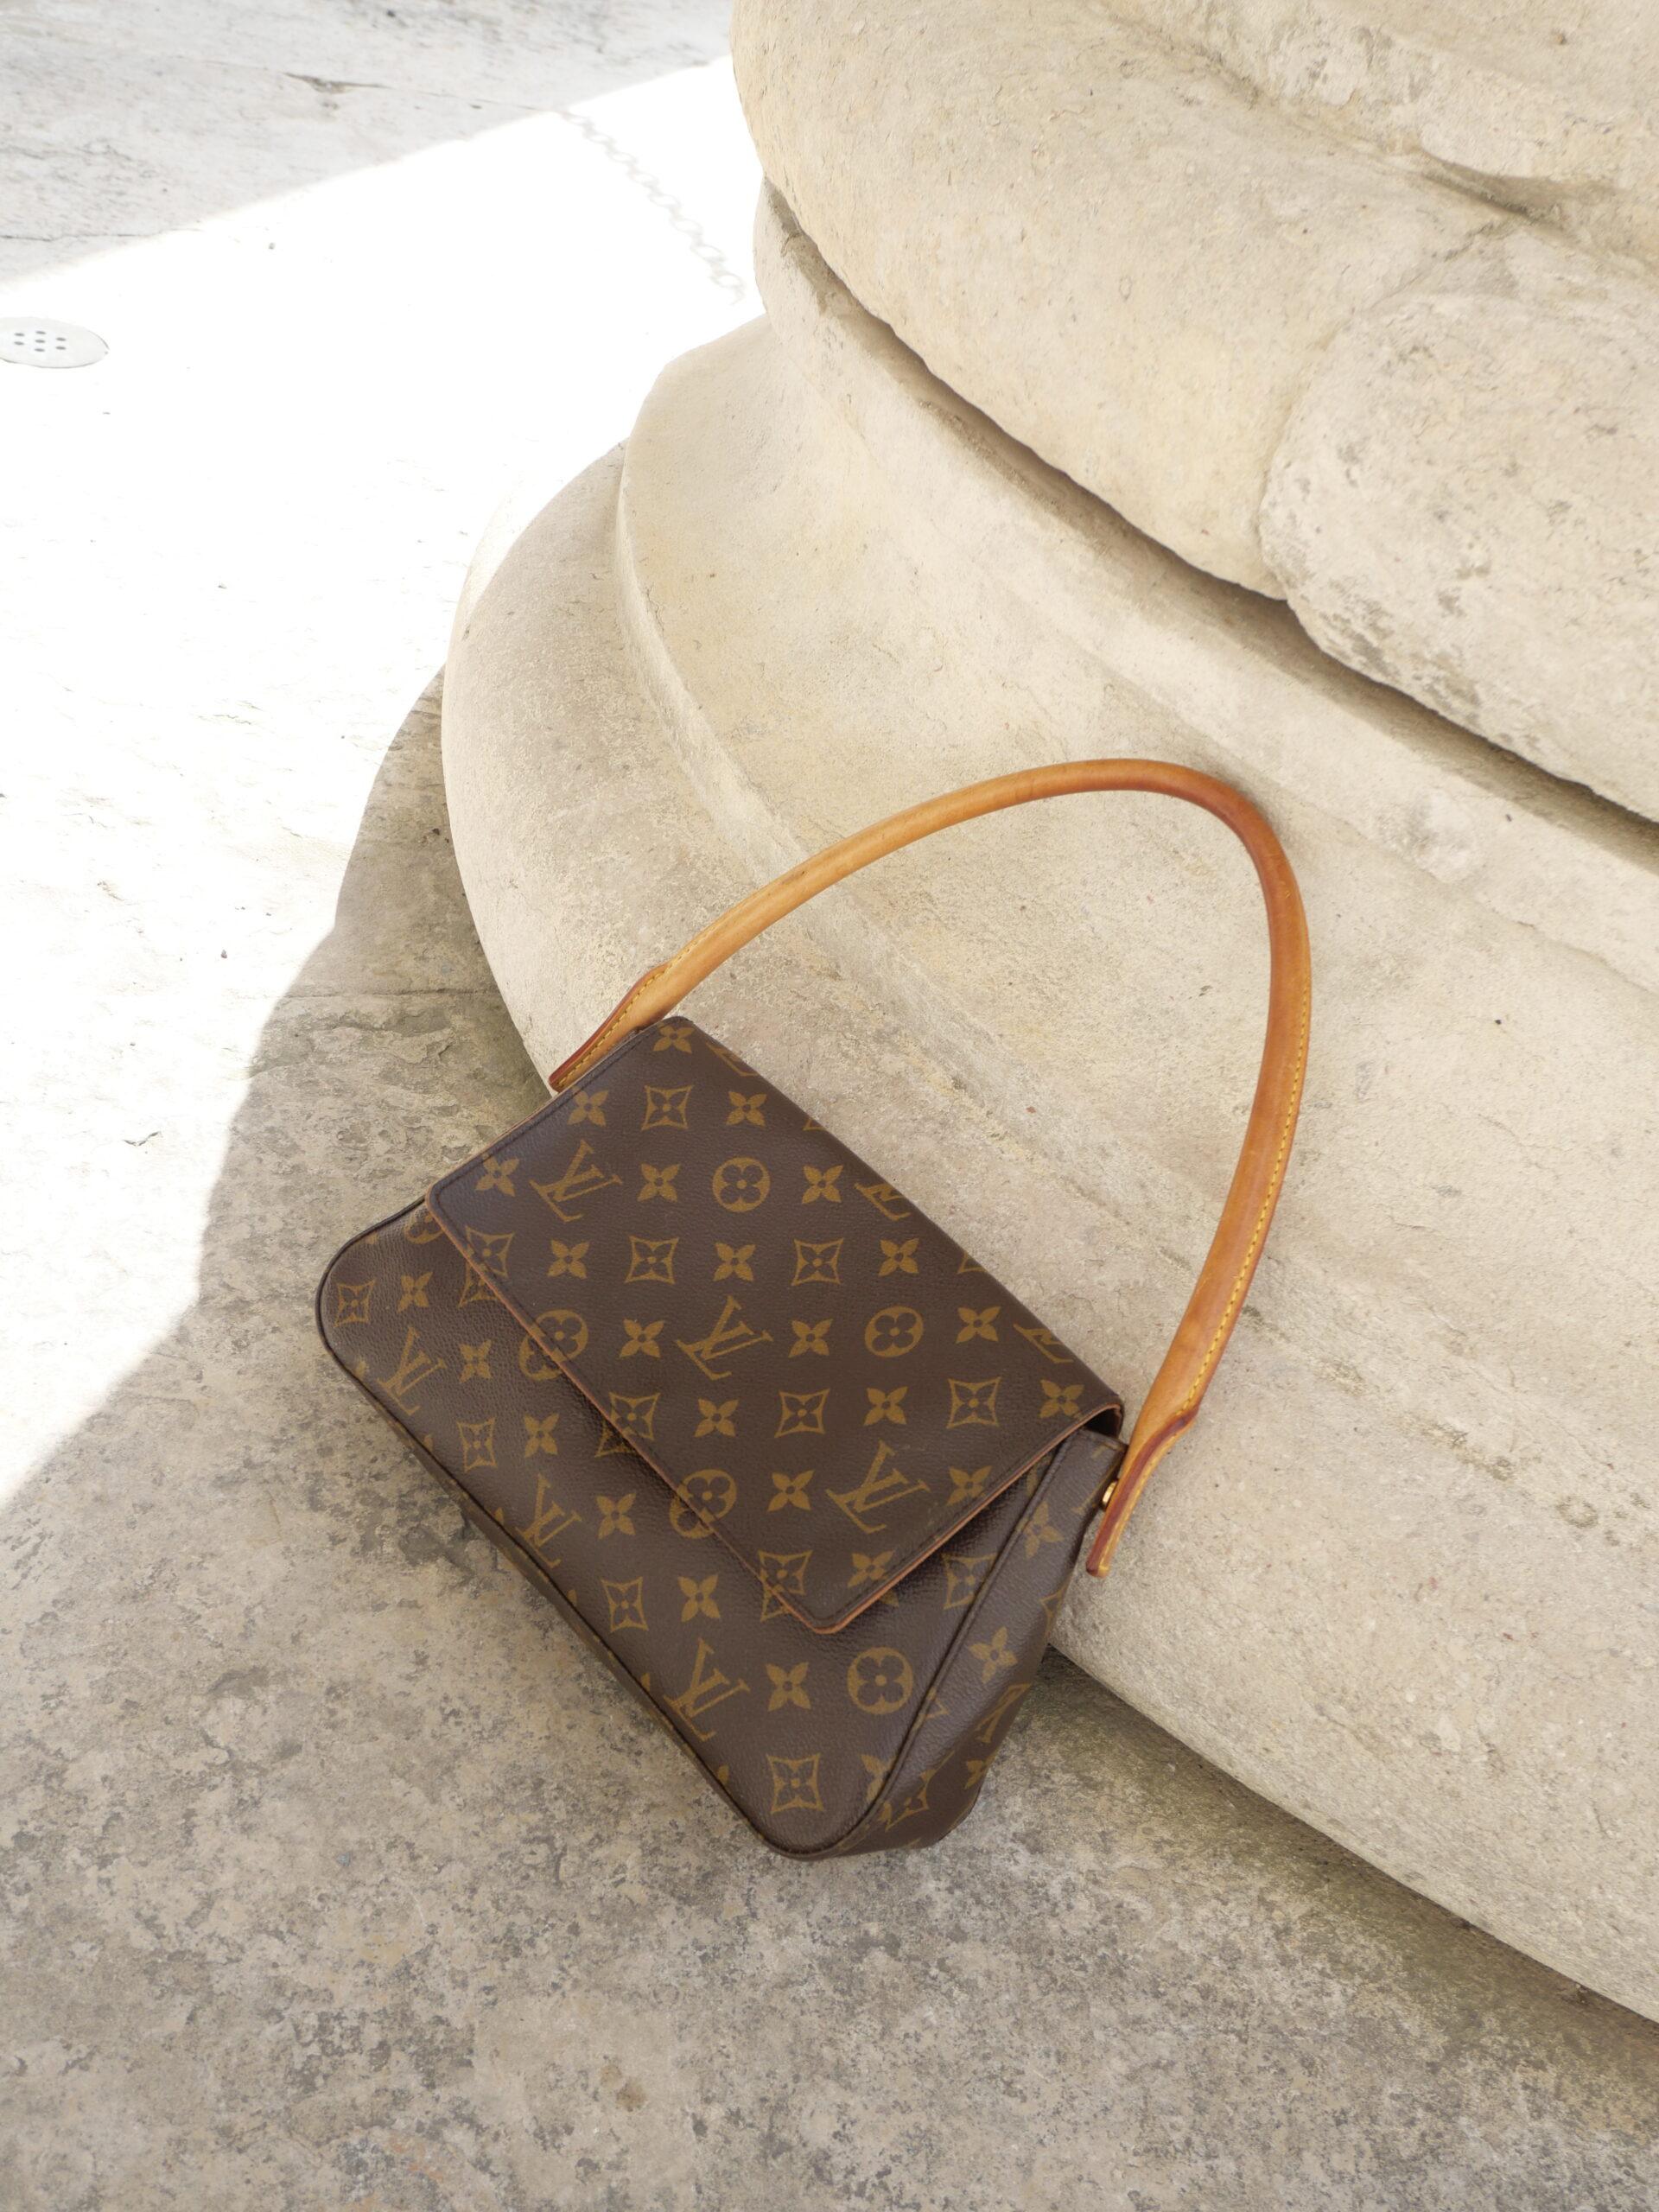 Handtaschen von Louis Vuitton für unter 500 Euro, Leben & Wissen